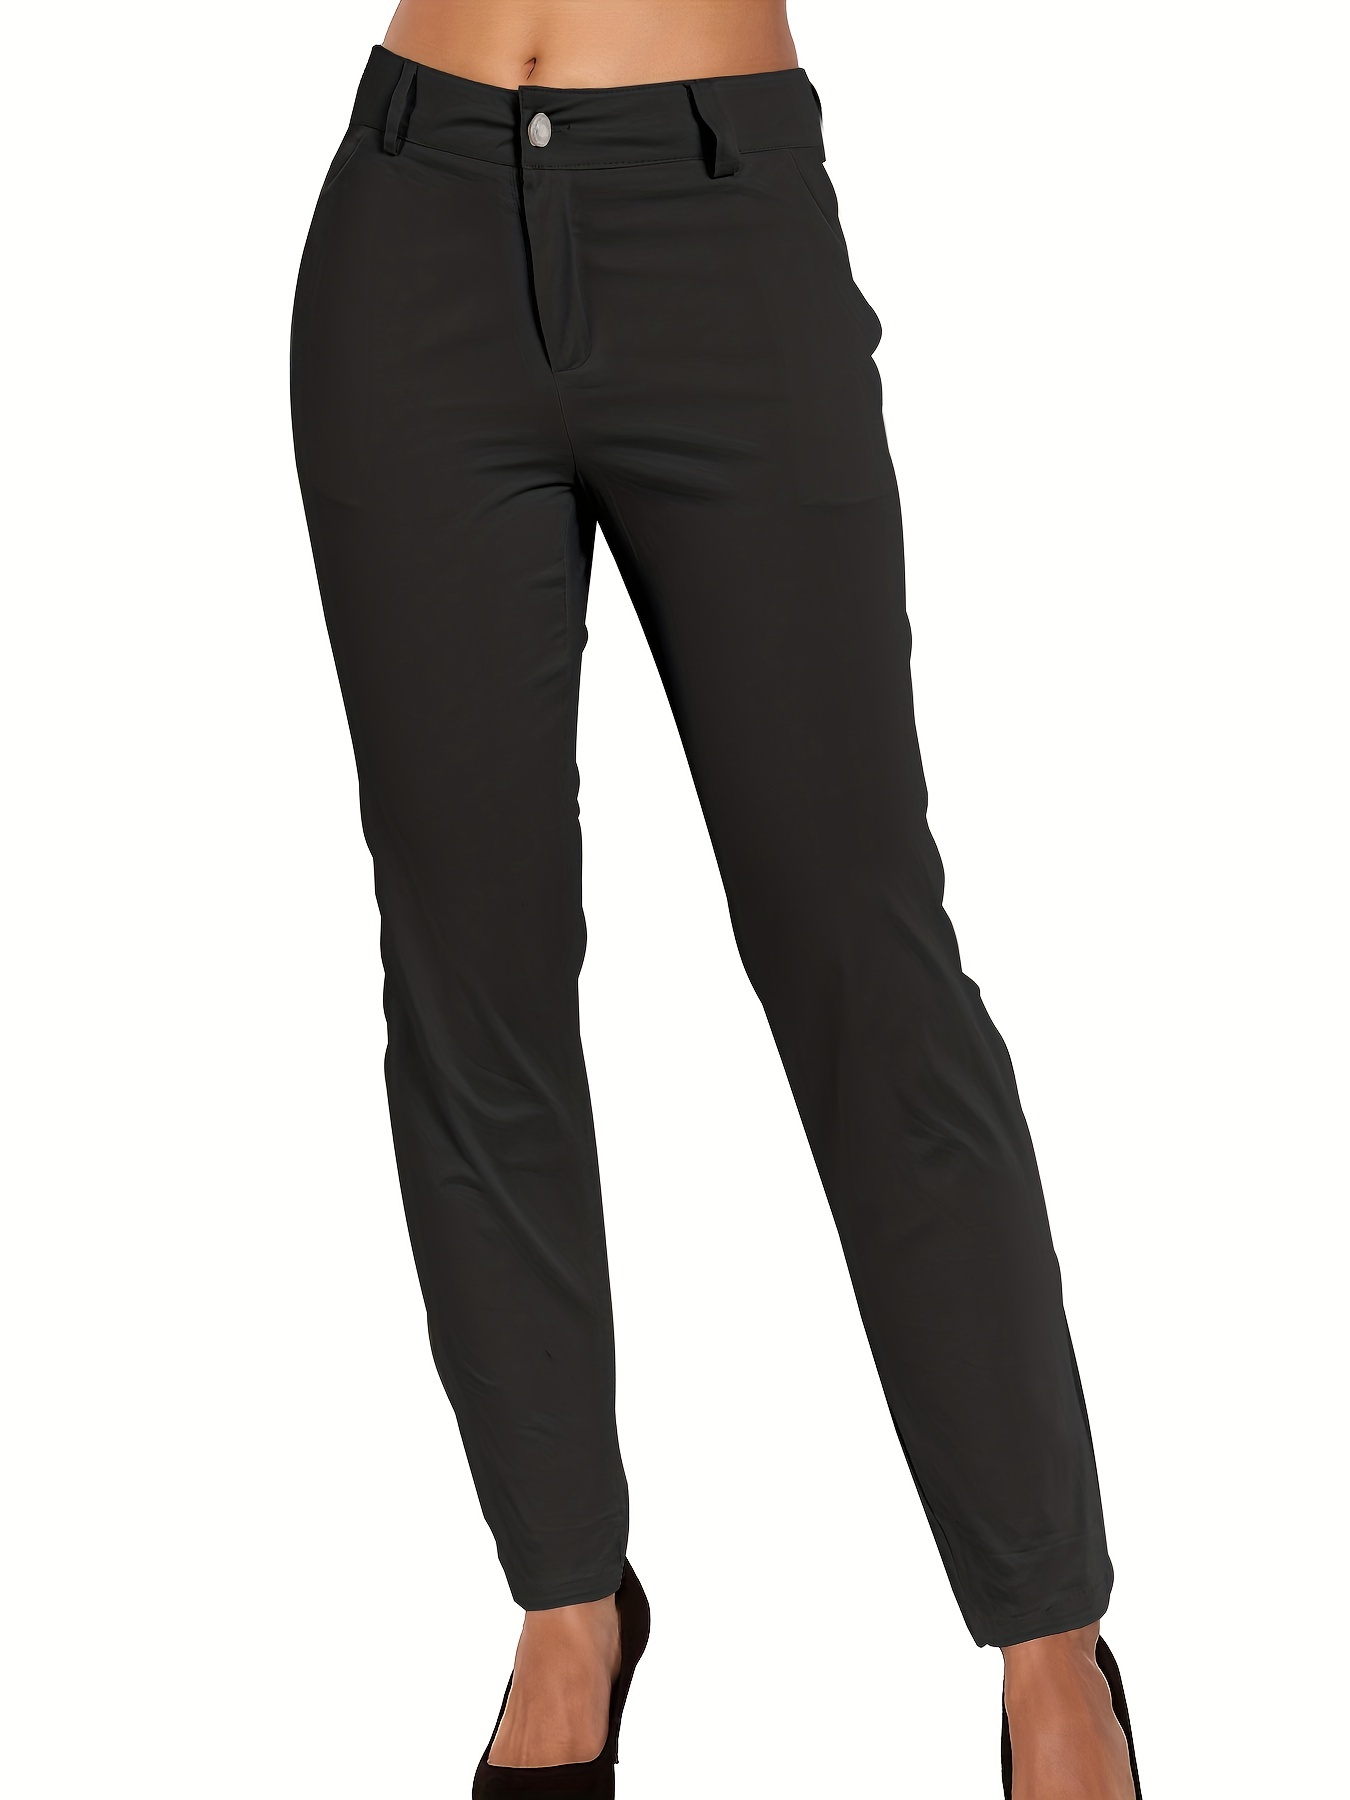 Pantalones Rectos Con Cintura Anudada, Pantalones Elegantes De Color Liso  Para El Trabajo Y La Oficina, Ropa De Mujer